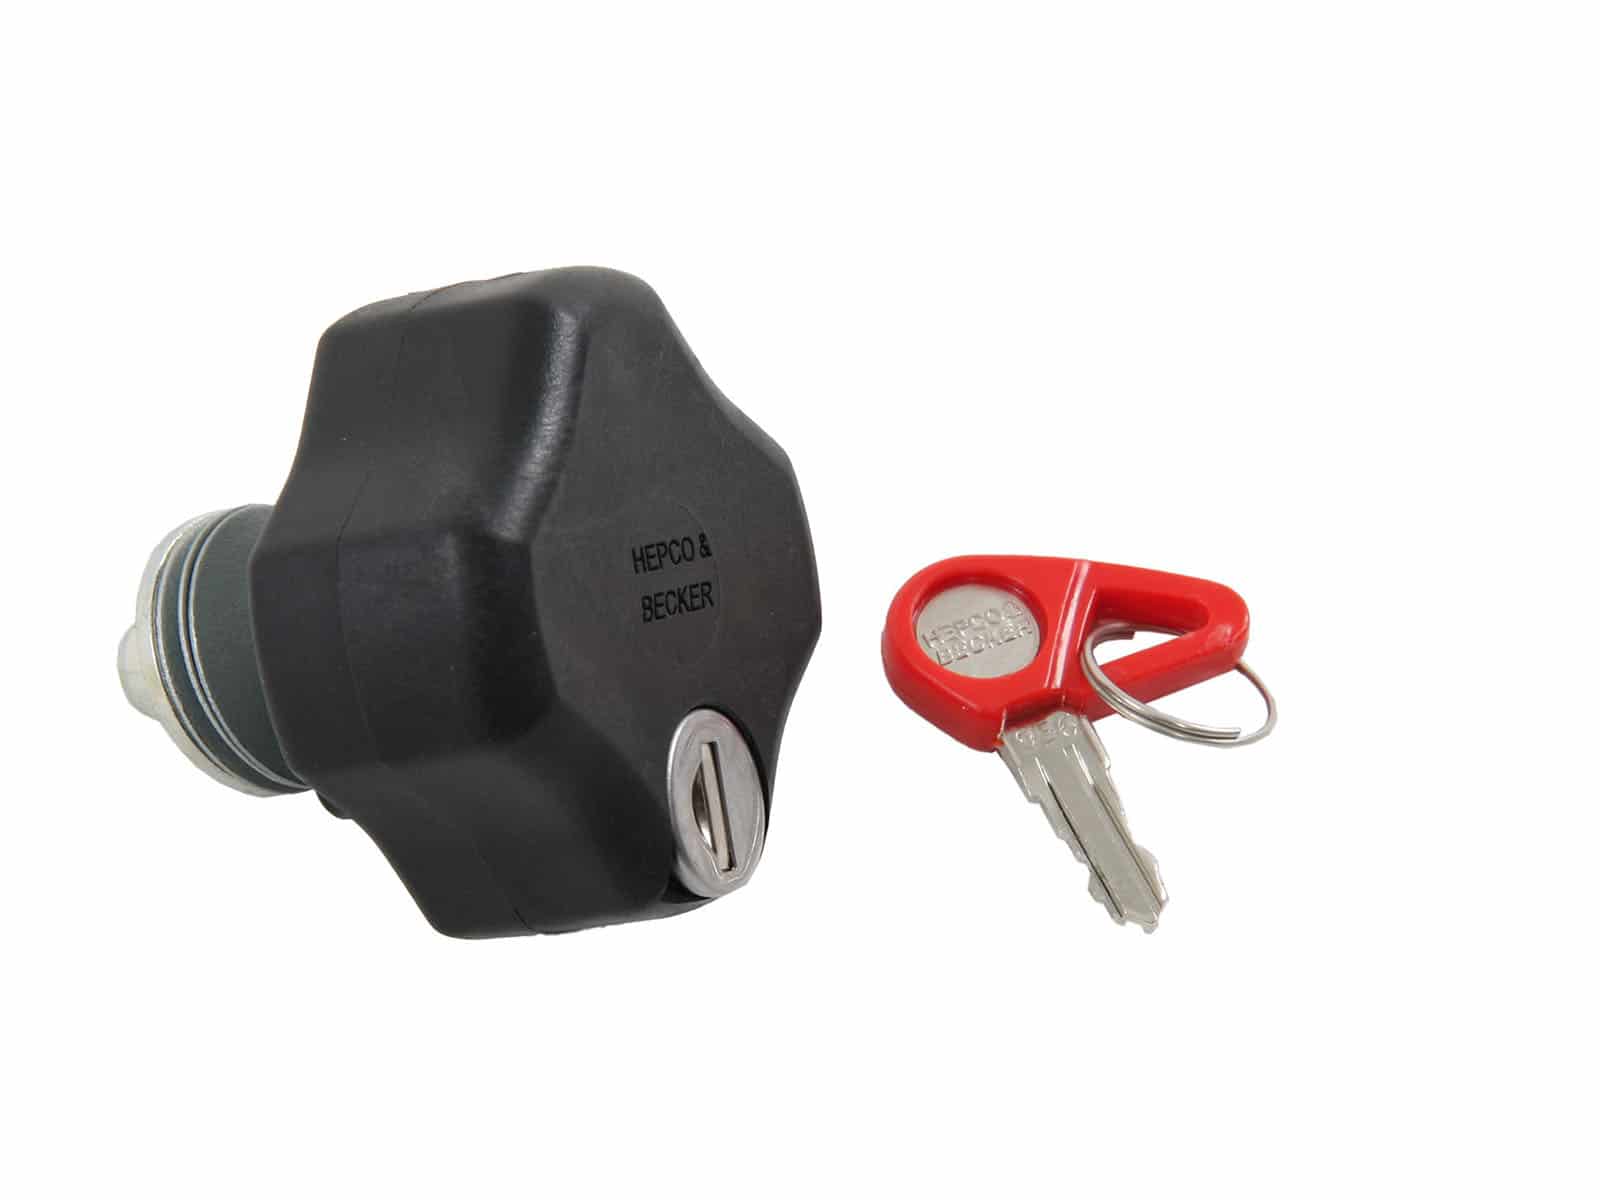 Lock-it Schraube abschließbar für Hepco&Becker Lock-it Seitenkofferträger